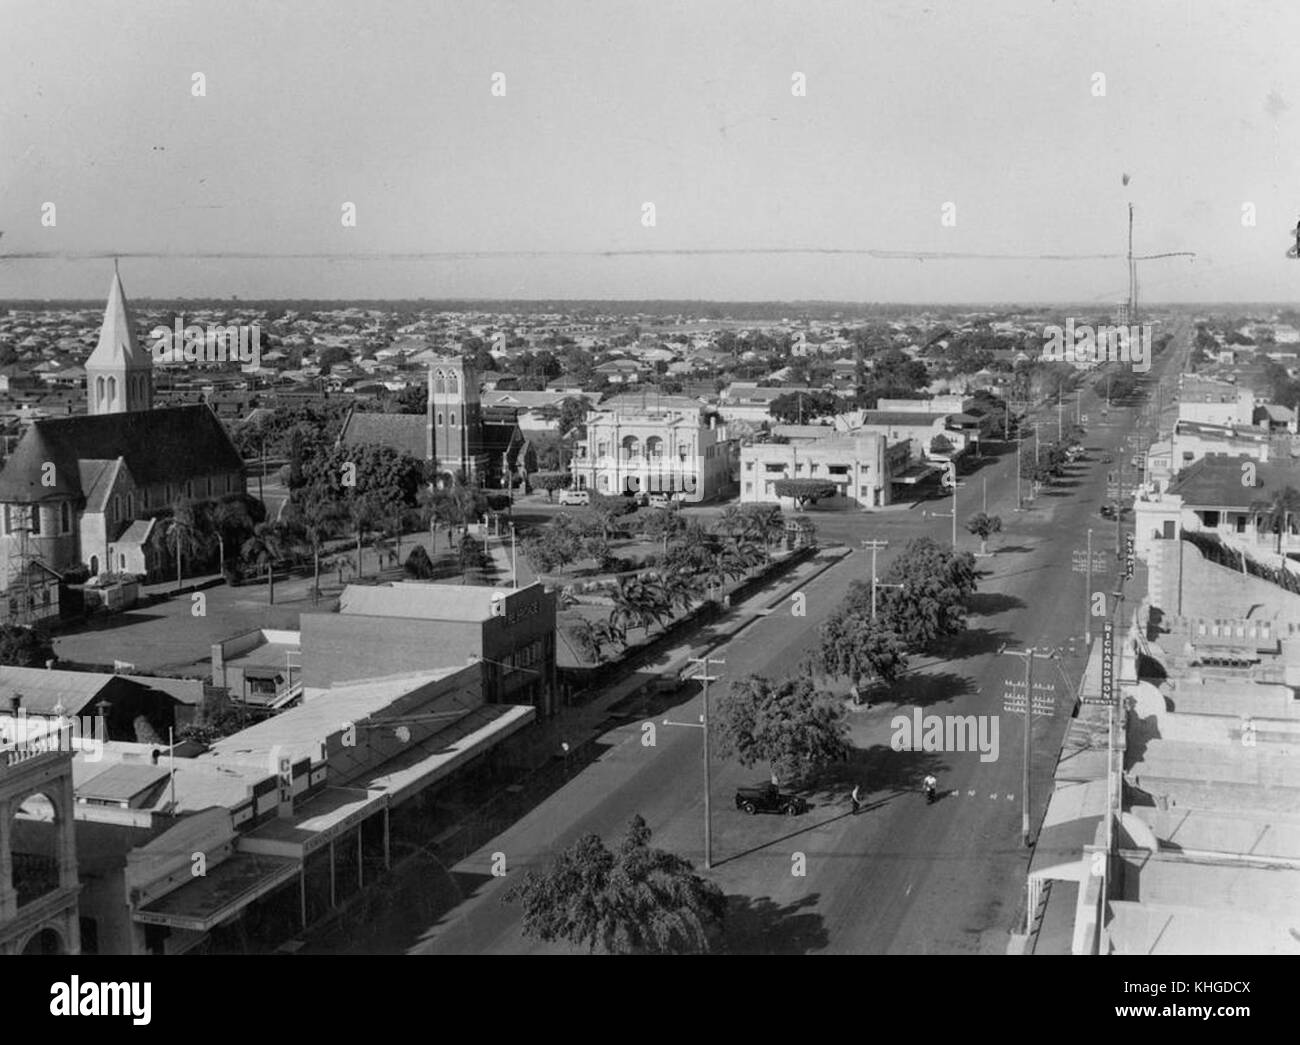 2 393837 mirando al occidente desde la oficina de correos en la torre Bourbong Street, Bundaberg, 1954 Foto de stock